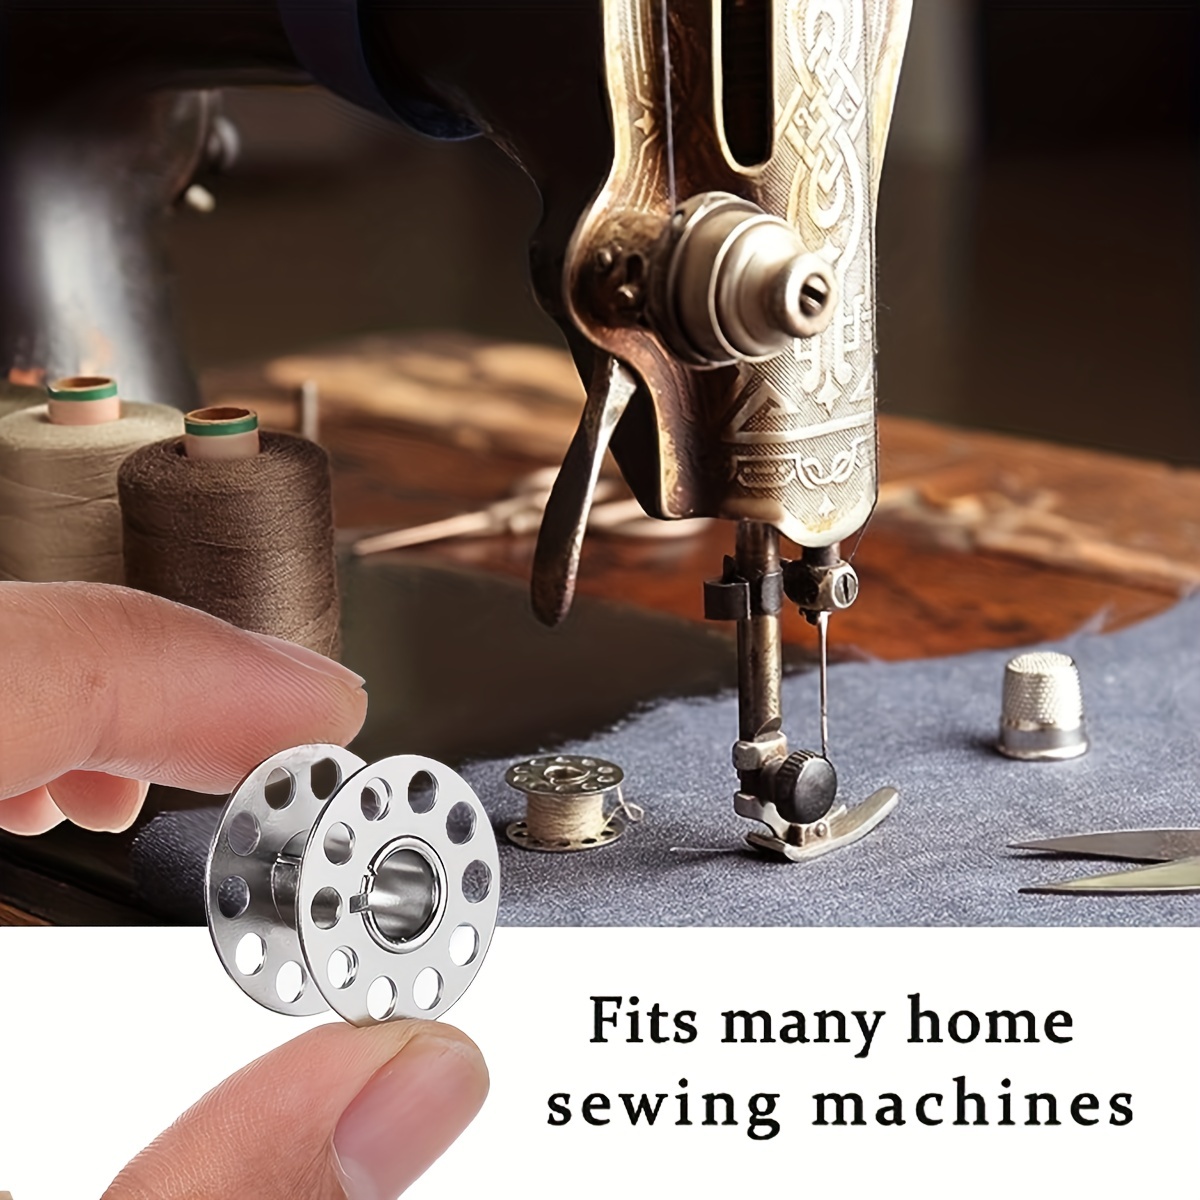 Bobinas plásticas para maquinas Brother coser x 4 unid. – MundoPatchwork